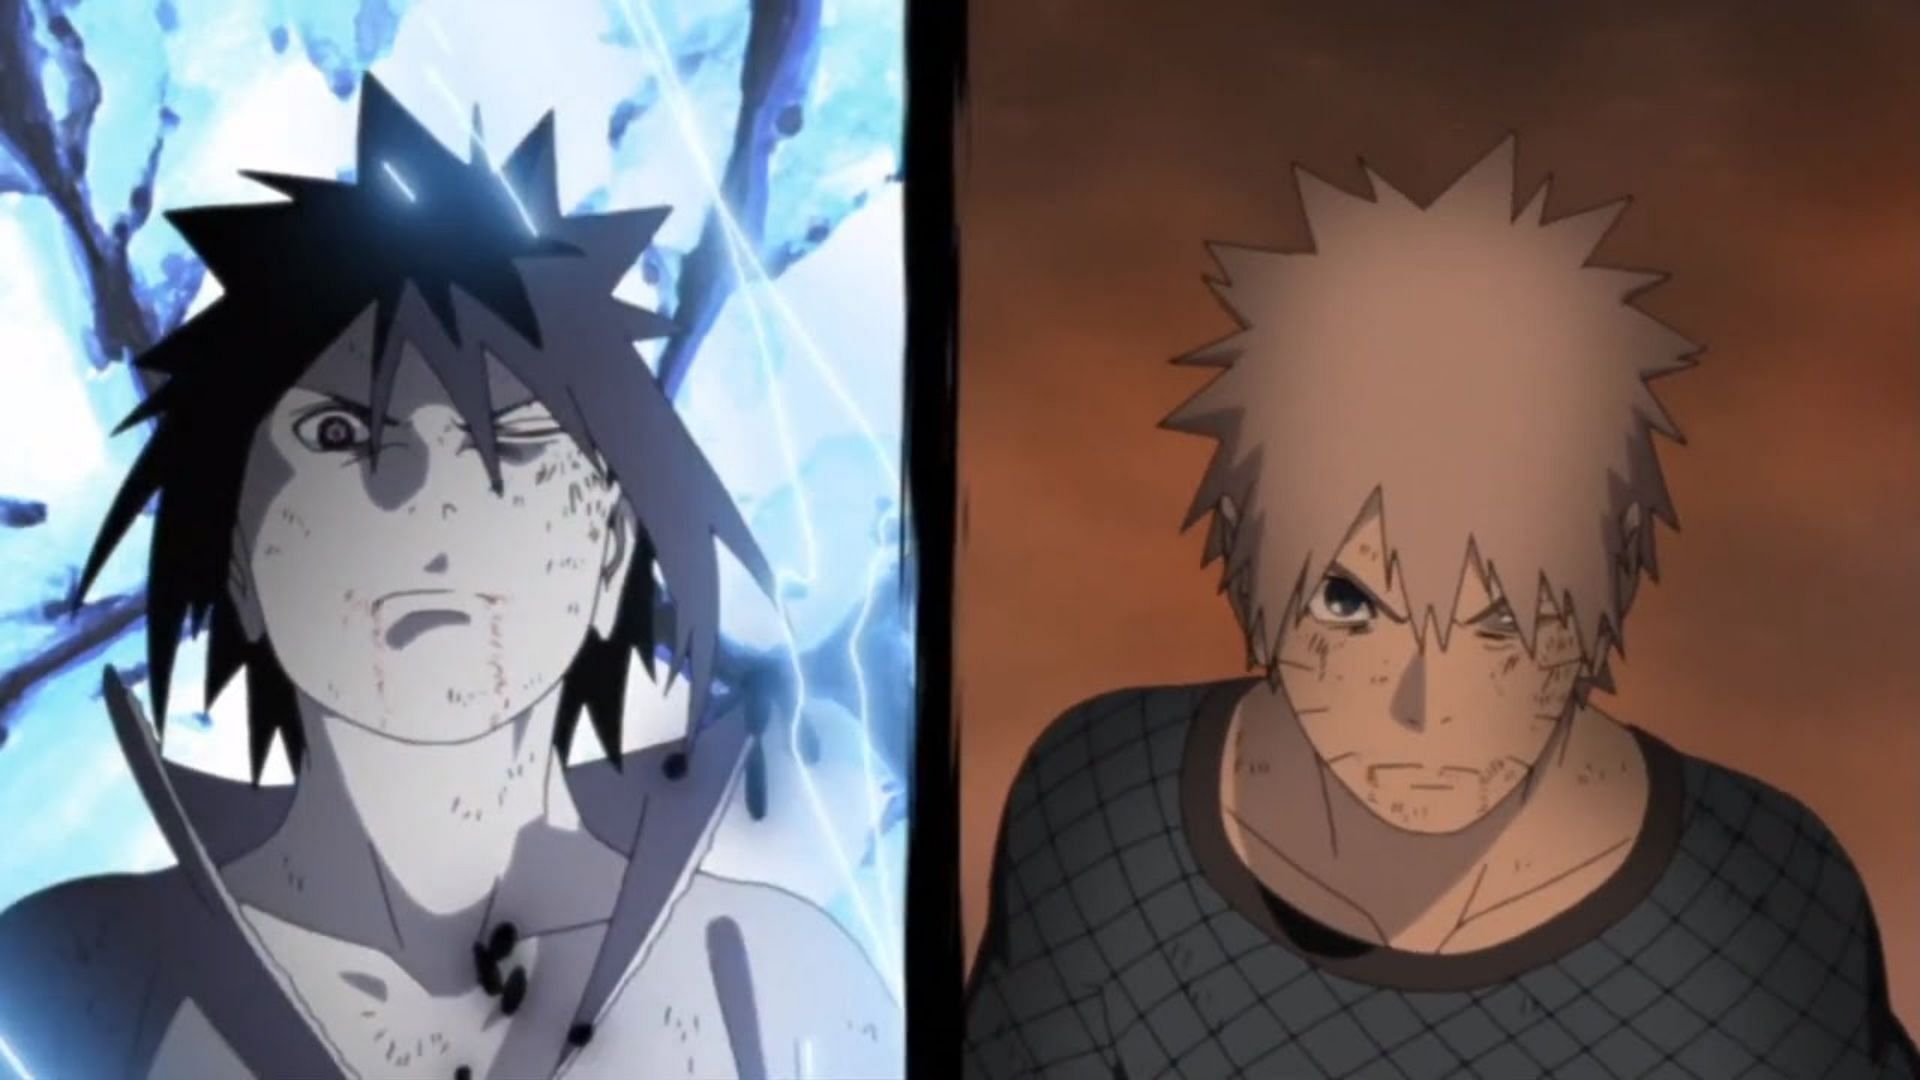 Sasuke and Naruto as seen in Naruto Shippuden